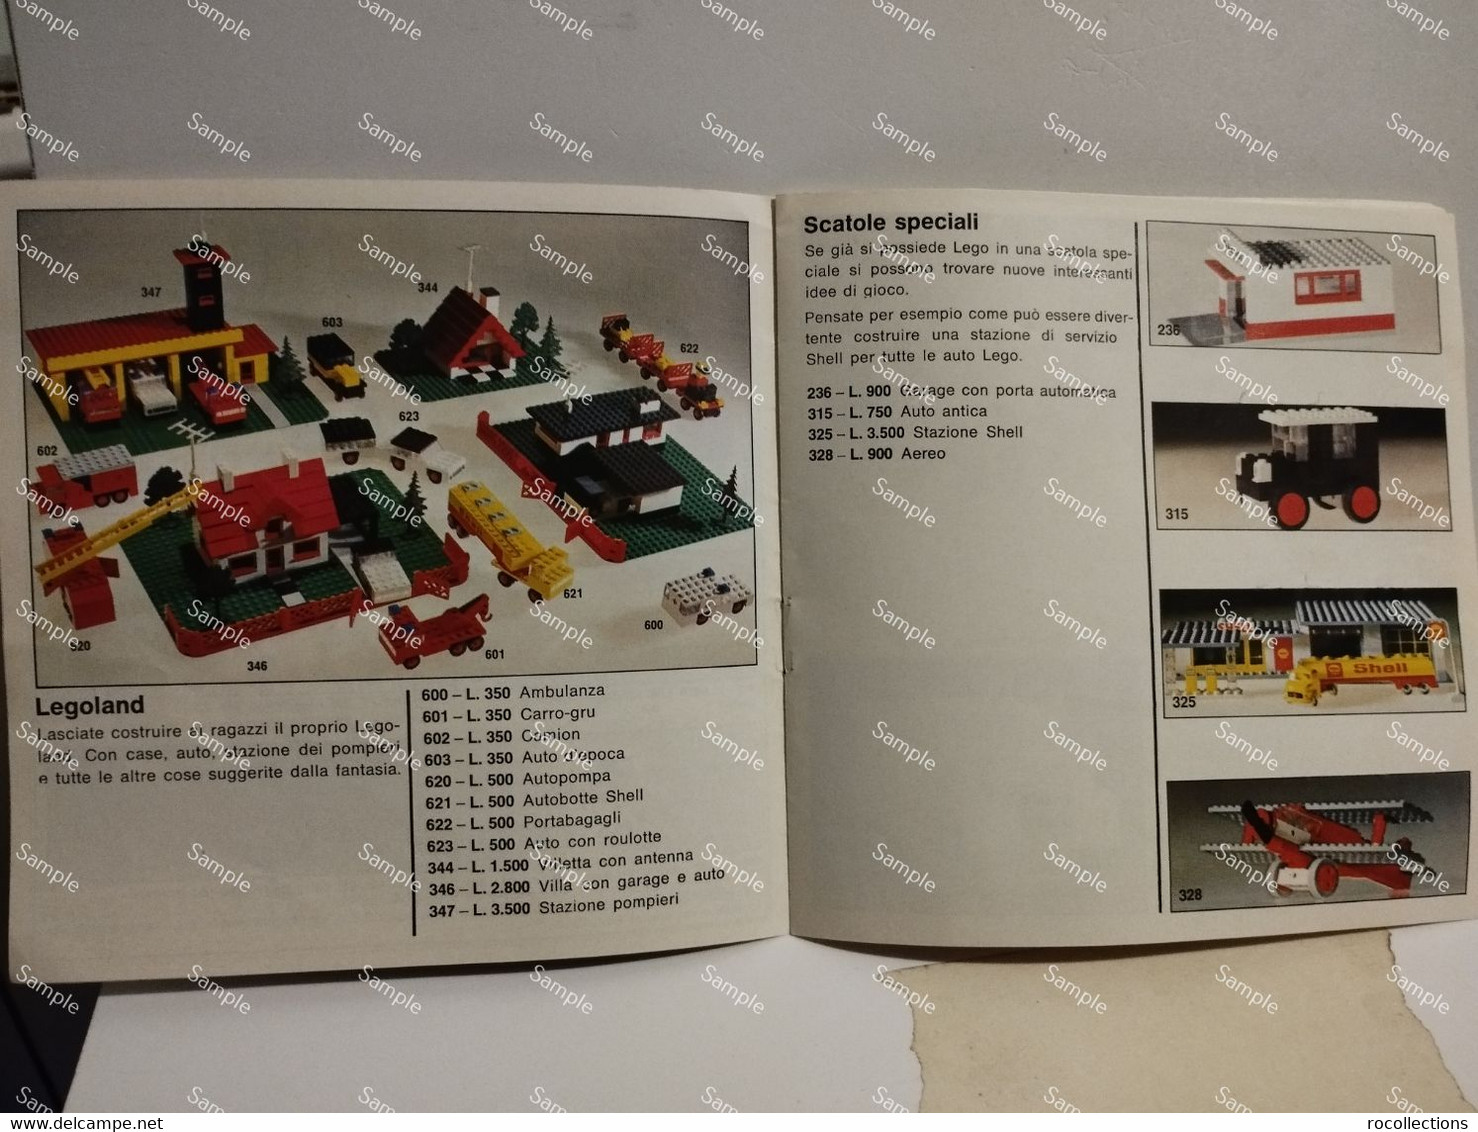 Italy Italia LEGO Little Catalog ASSORTIMENTO LEGO CON TUTTE LE NOVITA' DELL'ANNO. Printed In Germany - Catalogues